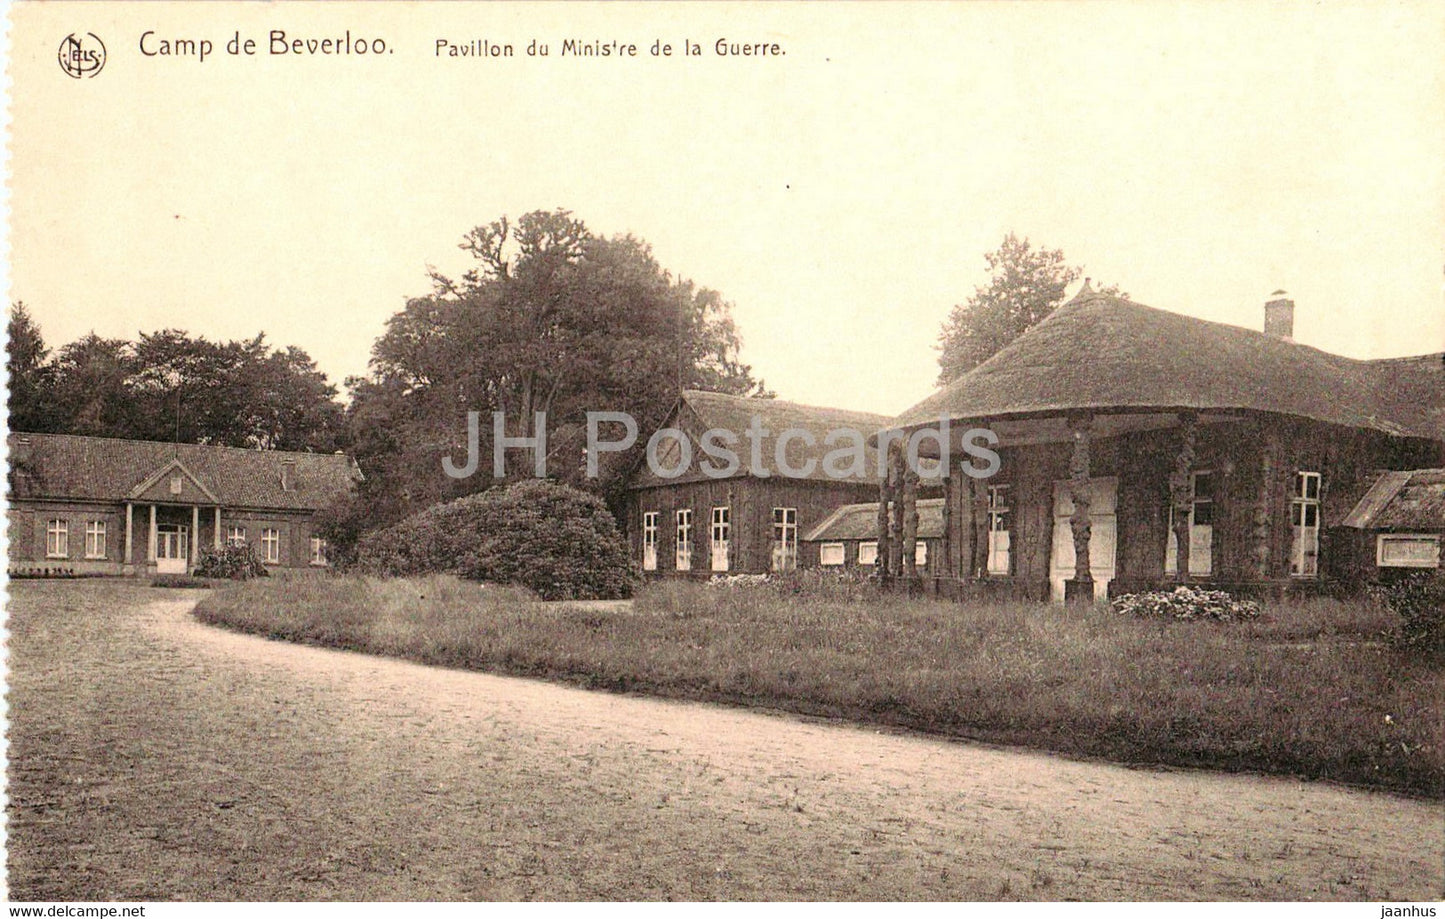 Camp de Beverloo - Leopoldsburg - Pavillon du Ministre de la Guerre - military - old postcard - Belgium - unused - JH Postcards